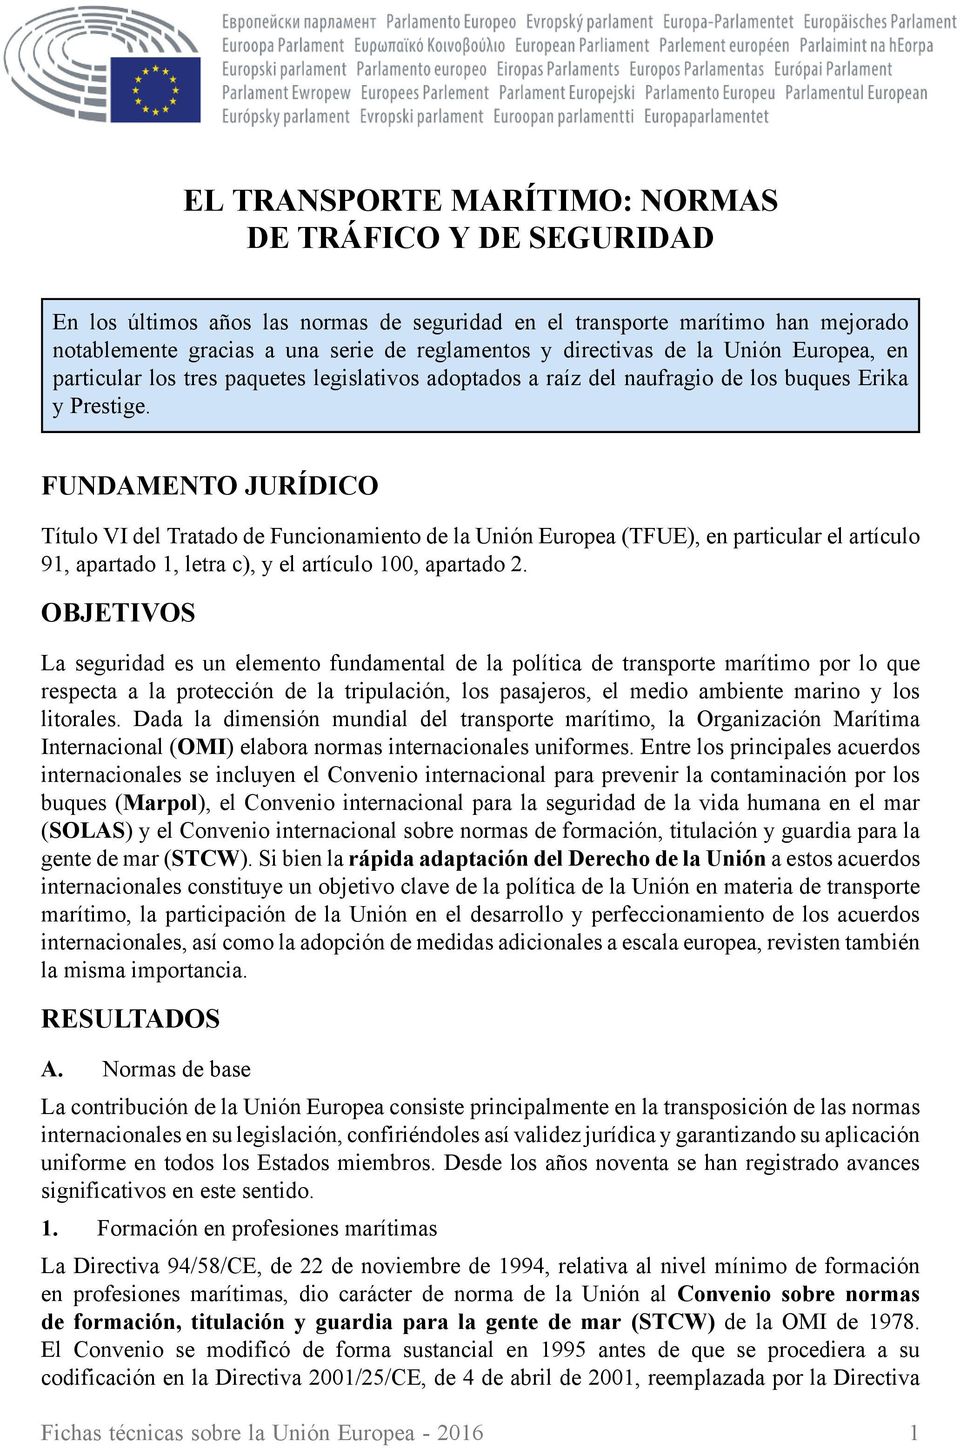 FUNDAMENTO JURÍDICO Título VI del Tratado de Funcionamiento de la Unión Europea (TFUE), en particular el artículo 91, apartado 1, letra c), y el artículo 100, apartado 2.